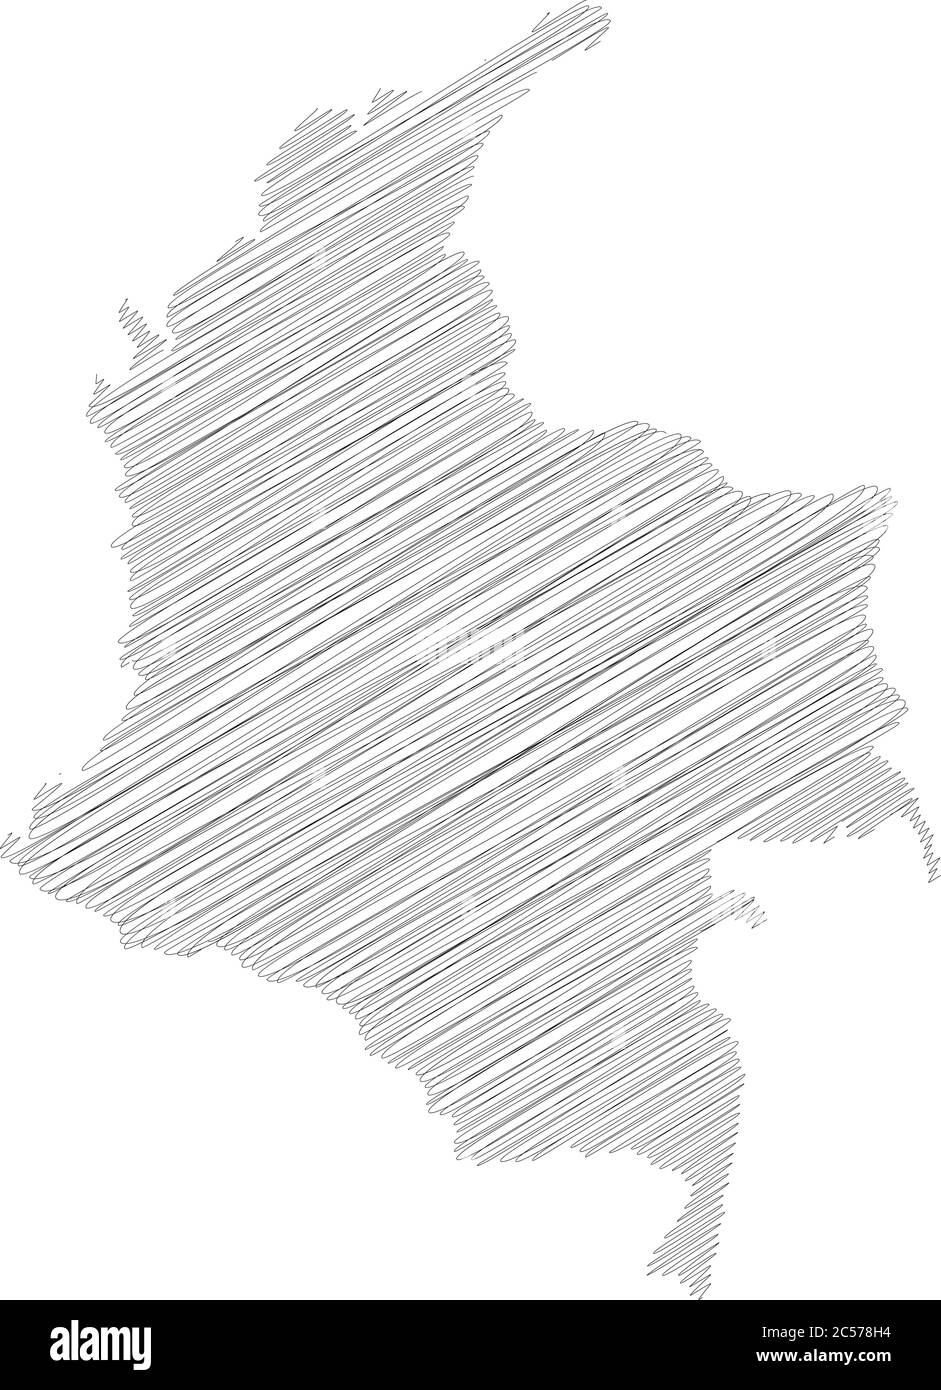 Colombia Scribble Lápiz Bosquejo Mapa De Silueta De área De País Con